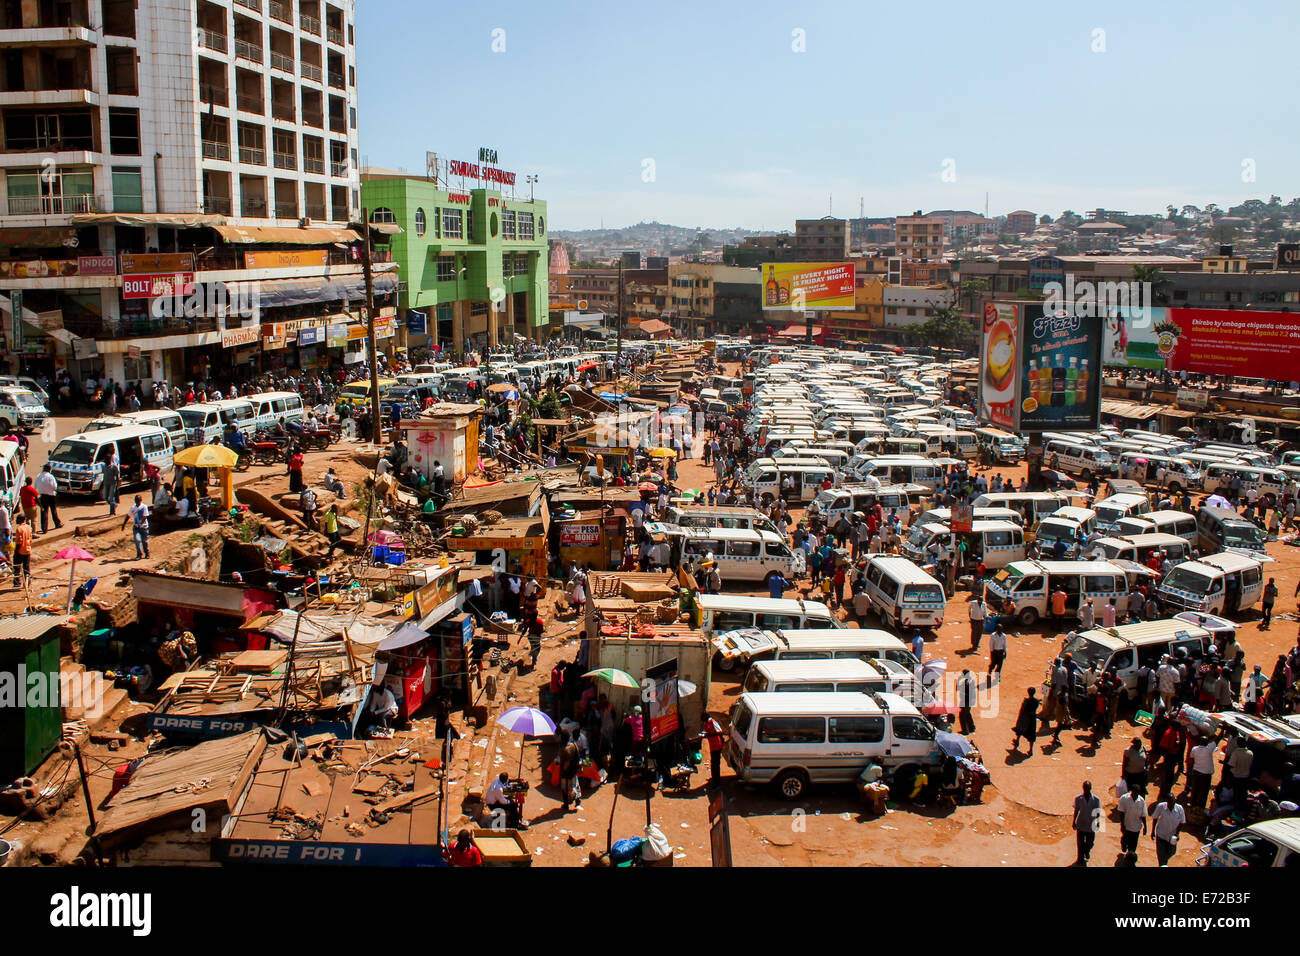 Kampala taxi park. Stock Photo